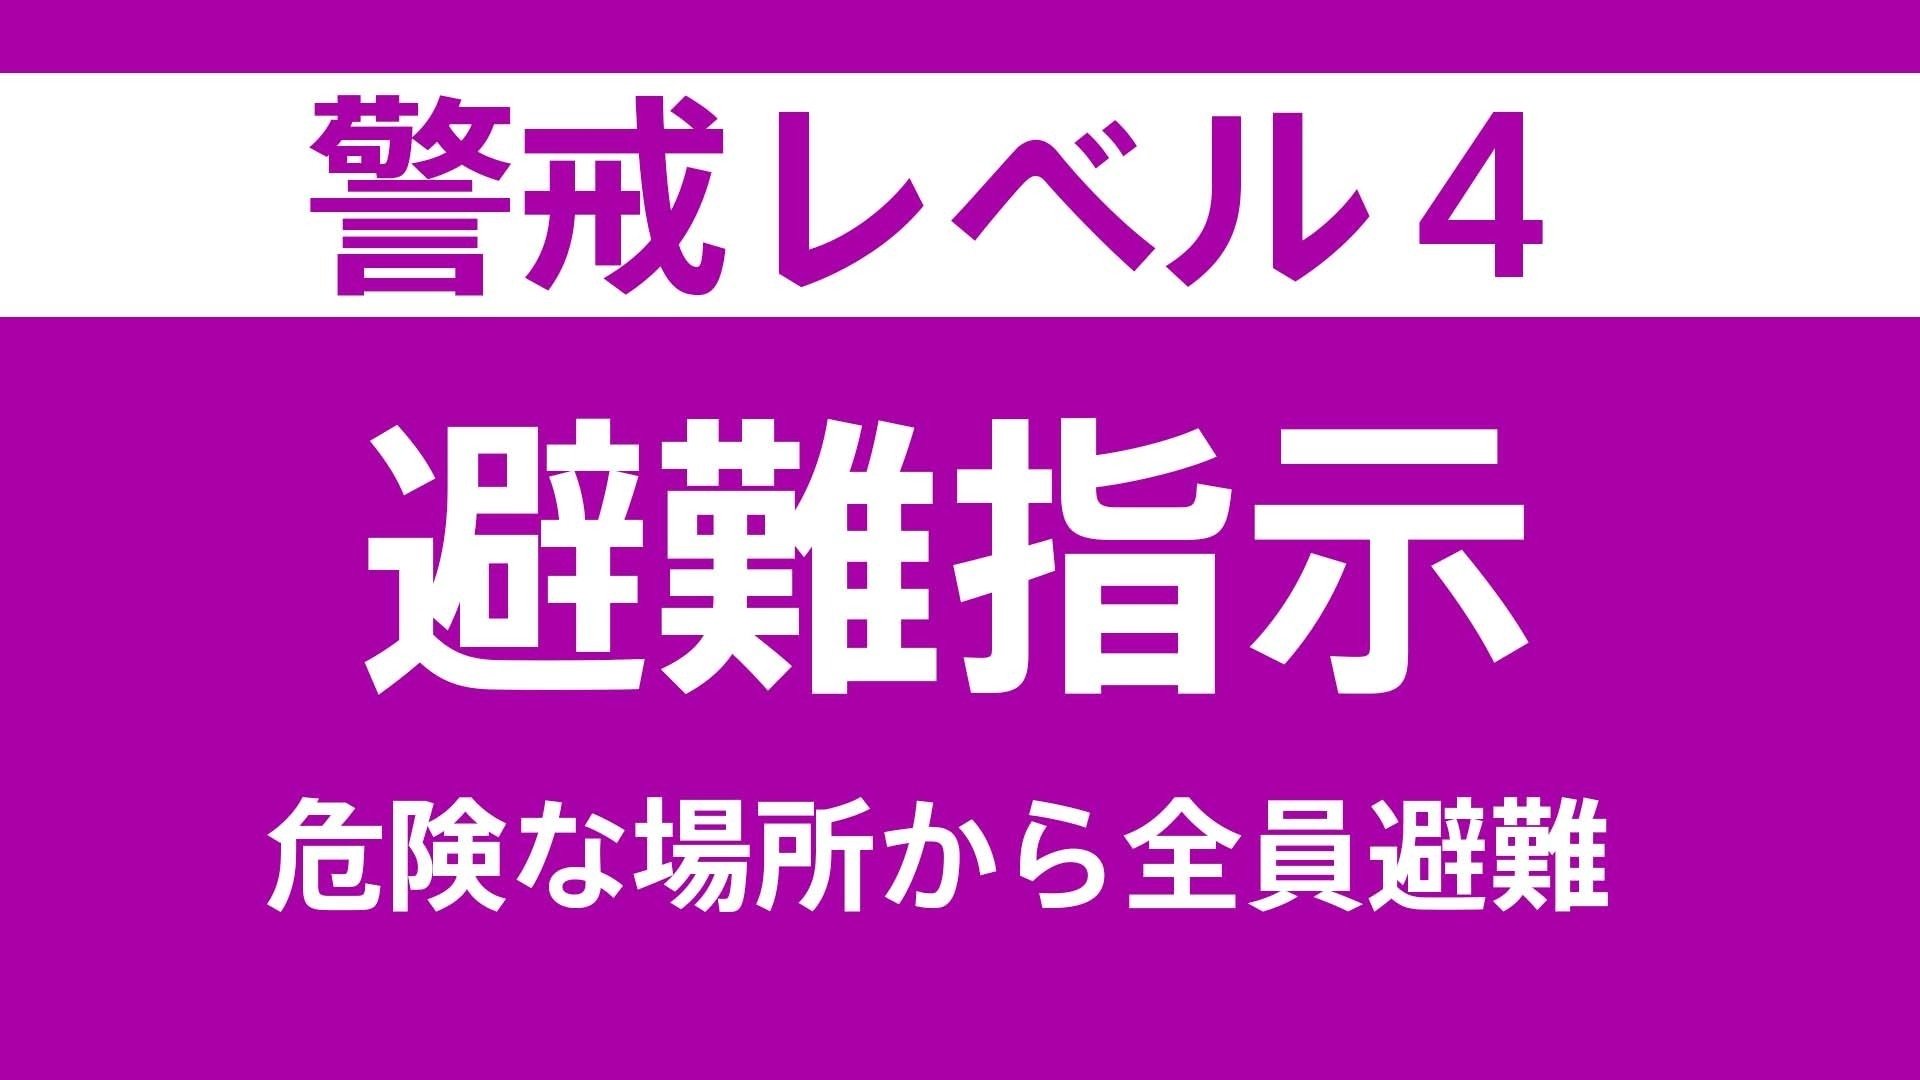 【避難情報】岐阜県郡上市の一部に「避難指示」発令